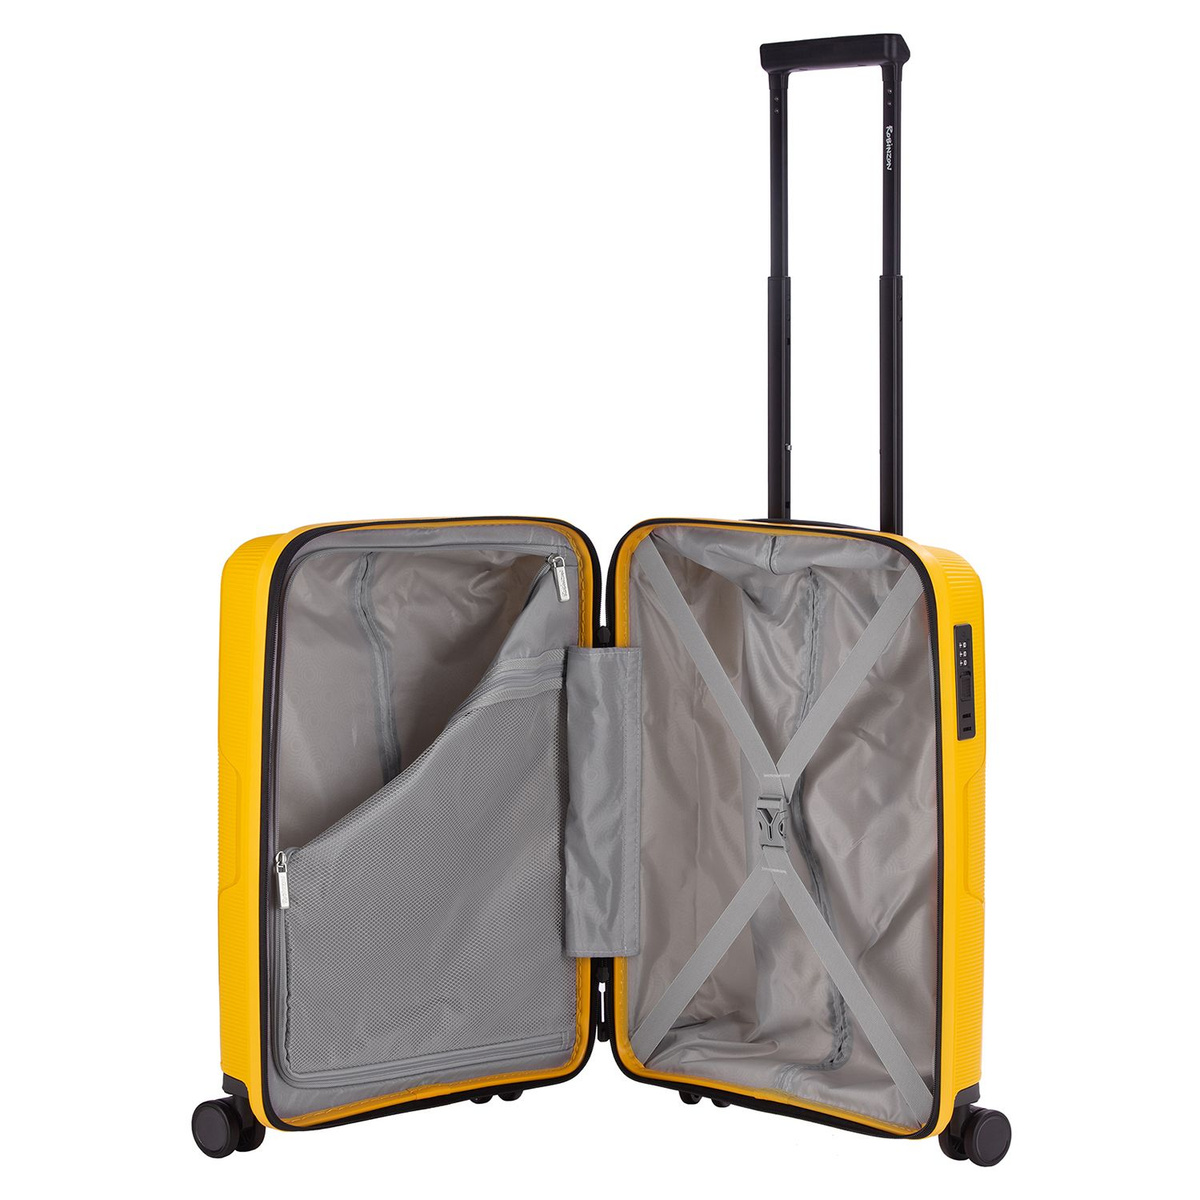 Внутри чемодана одно отделение на замке с дополнительным карманом и просторное отделение с багажными ремнями для ещё более удобной организации.